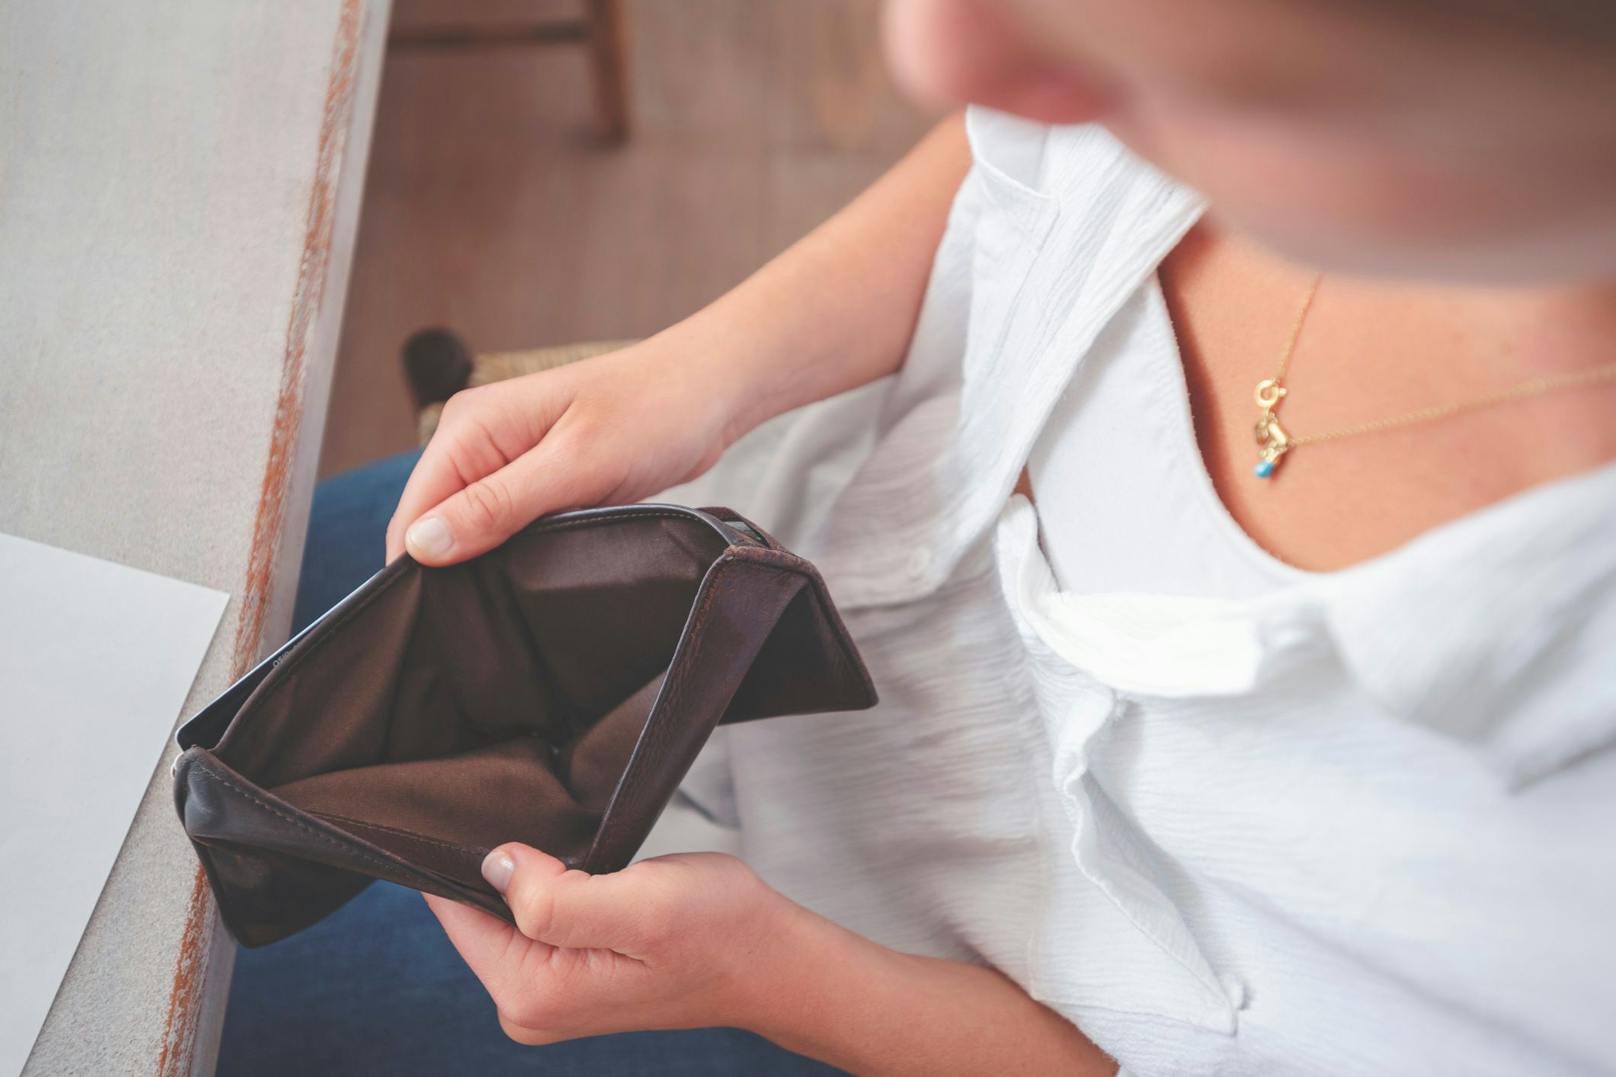 Eine Frau blickt verzweifelt in ihre leere Geldbörse. Symbolbild.